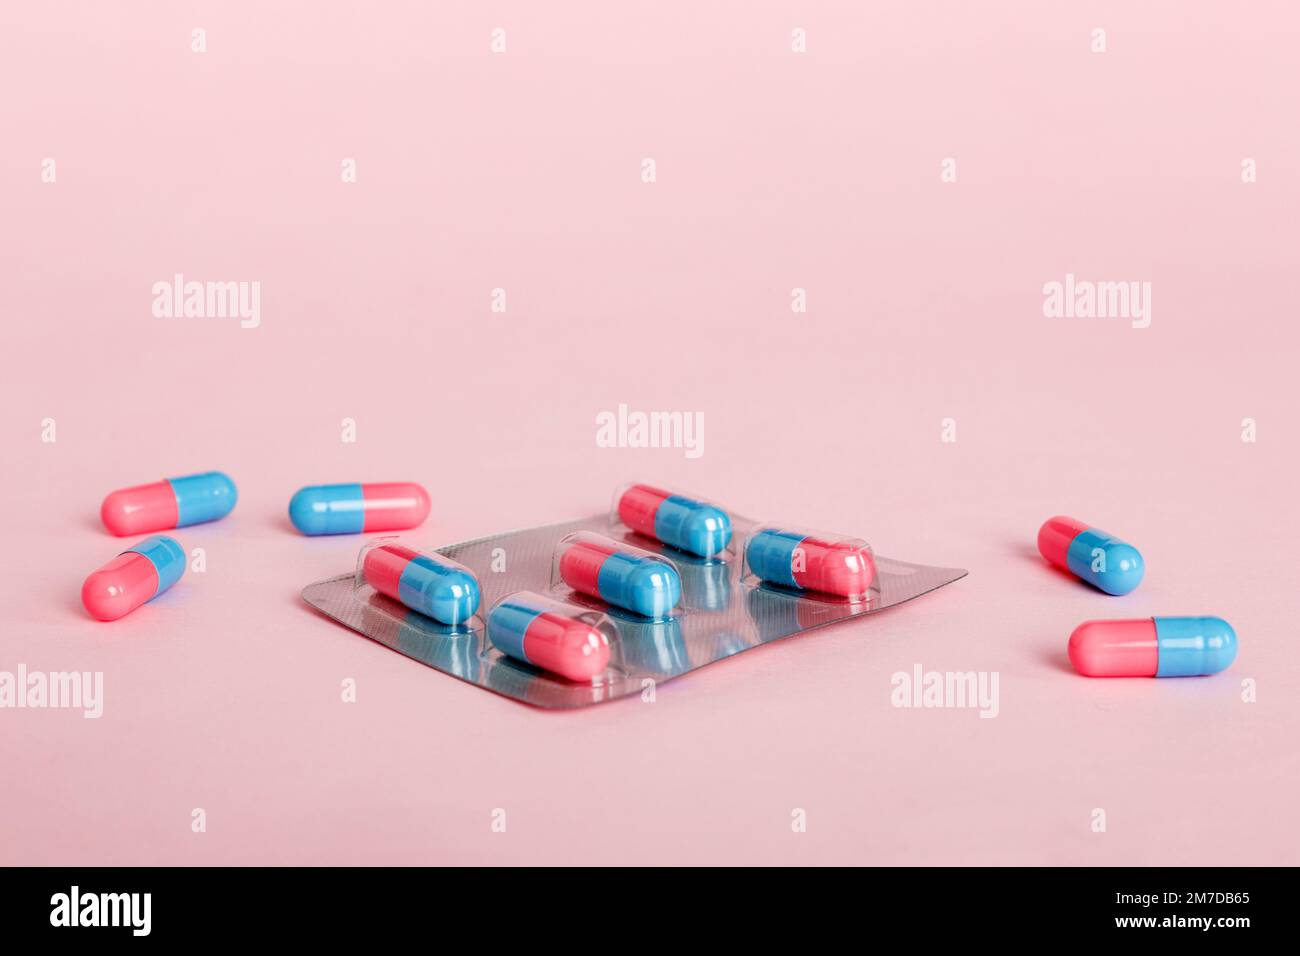 Medicine Pillen auf einem hellen Hintergrund. Medikamente und verschreibungspflichtige Pillen flach legen Hintergrund. Blaue und rosafarbene Tabletten in Blister. Stockfoto